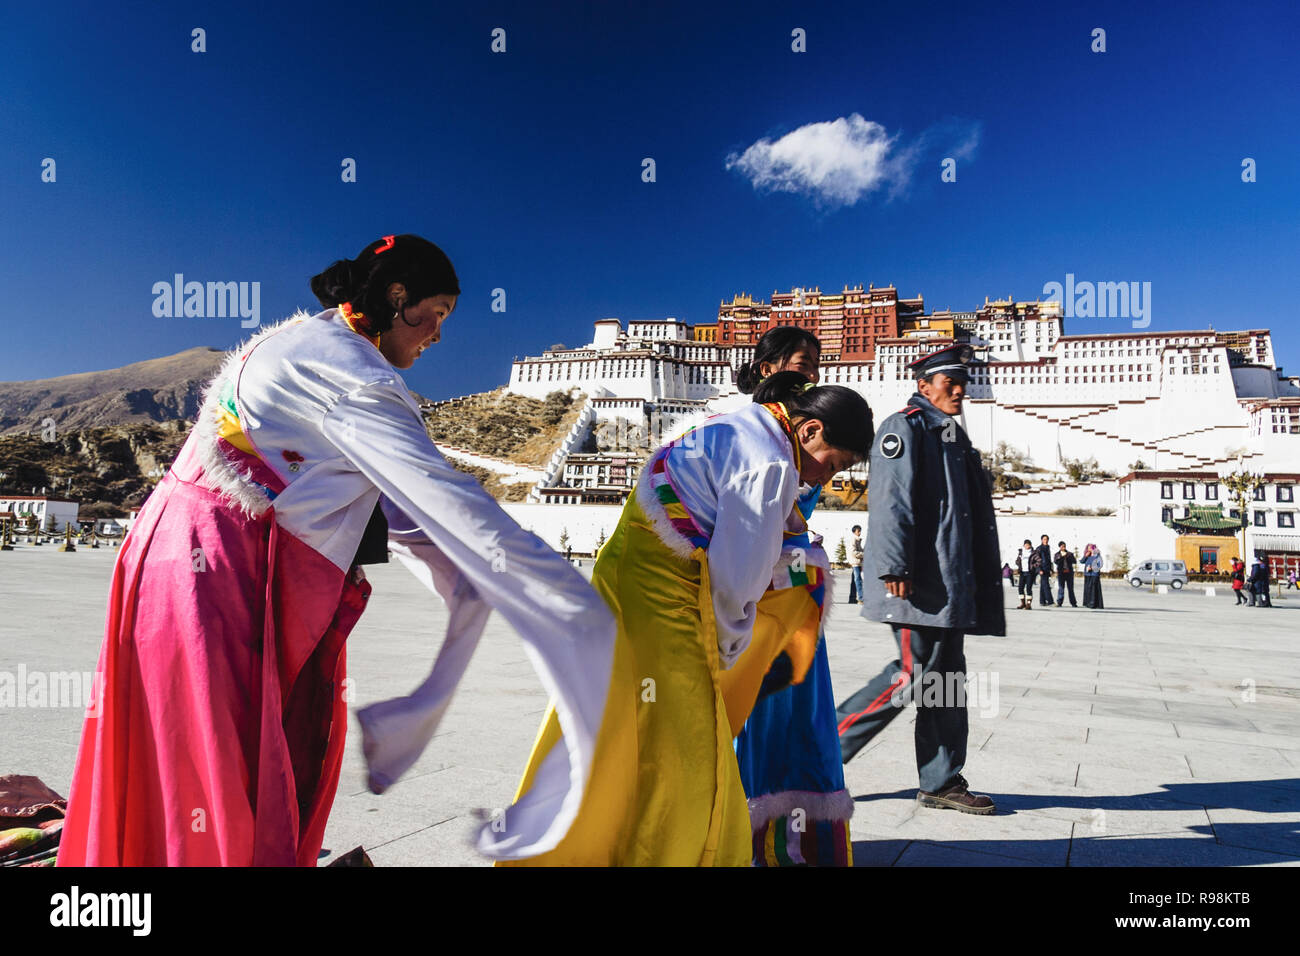 Lhasa, Tibet autonomen Region, China: Ein chinesischer Polizist Spaziergänge letzten drei tibetischen Frauen heraus versuchen, traditionelle Kostüme Neben Potala-palast. Fir Stockfoto